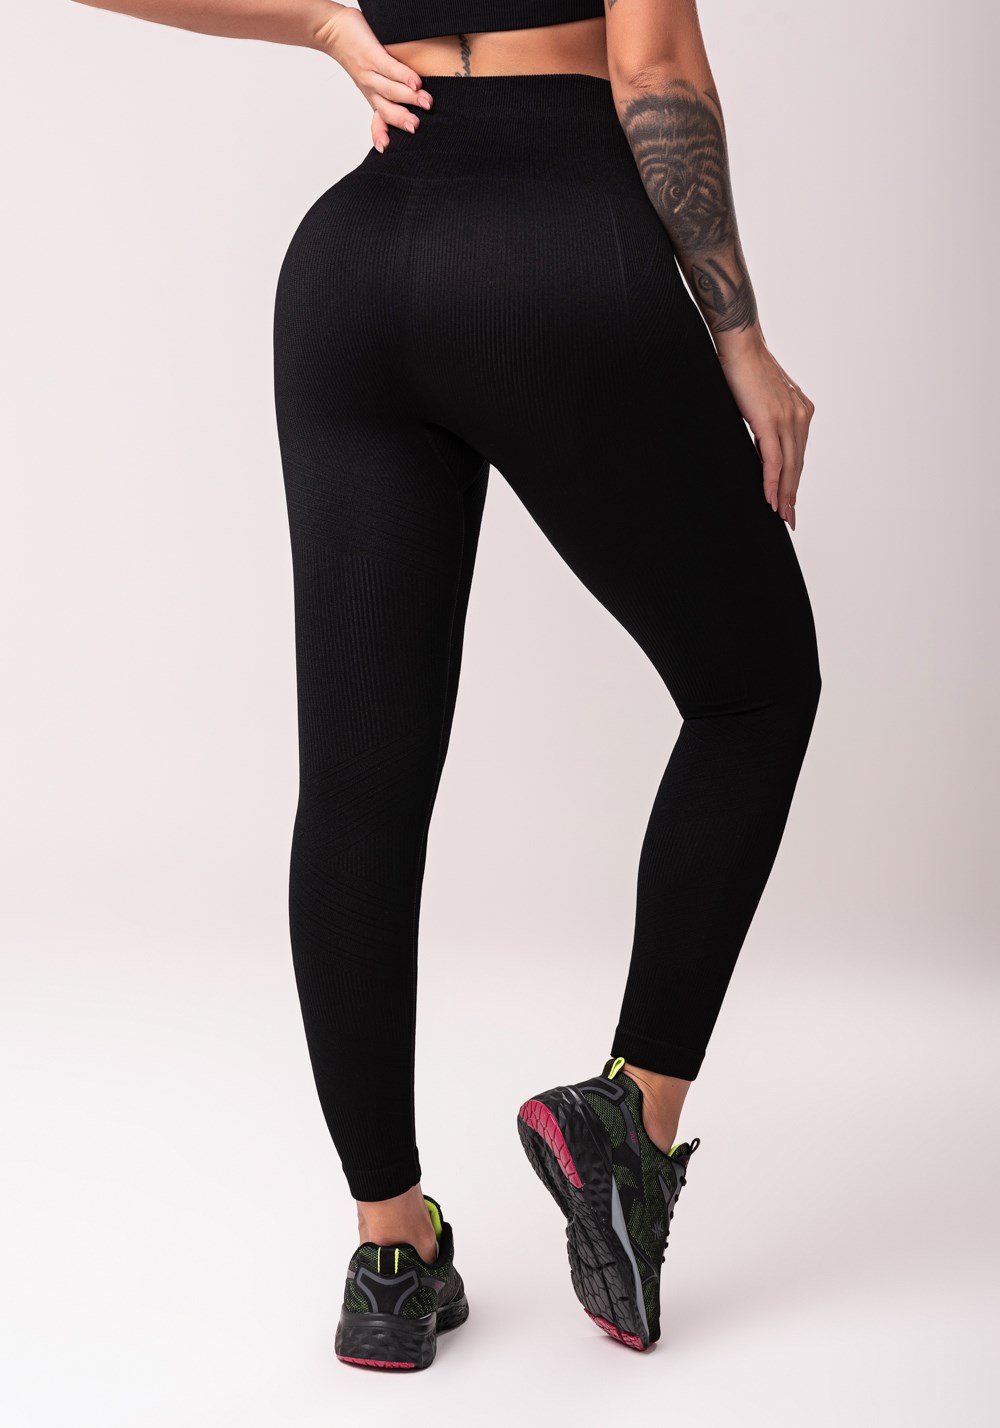 Legging fitness feminina preto com recorte canelado seamless